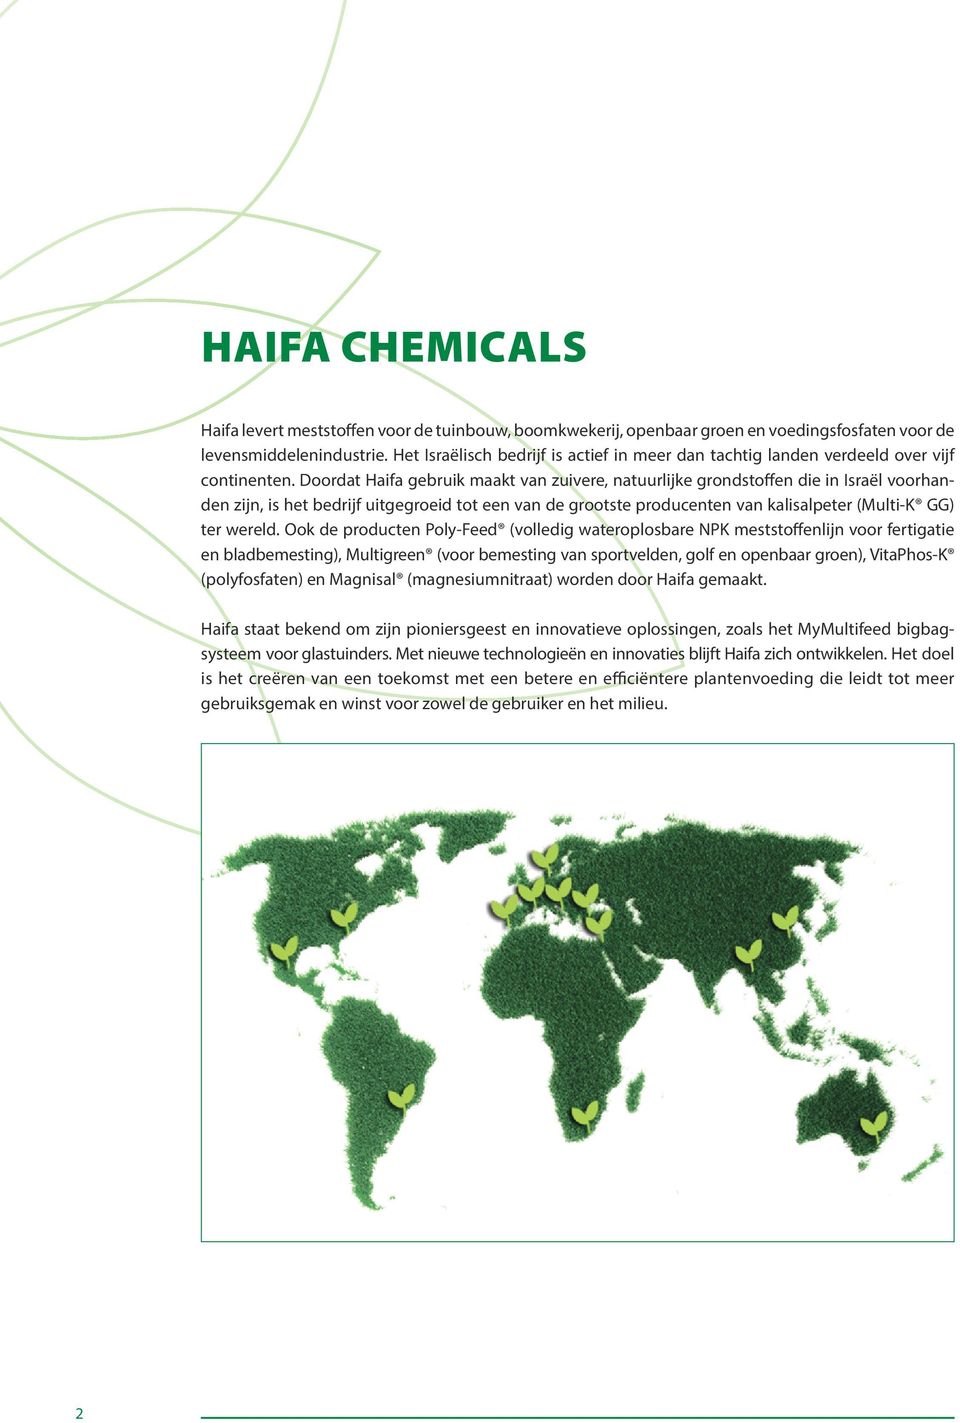 Doordat Haifa gebruik maakt van zuivere, natuurlijke grondstoffen die in Israël voorhanden zijn, is het bedrijf uitgegroeid tot een van de grootste producenten van kalisalpeter (Multi-K GG) ter